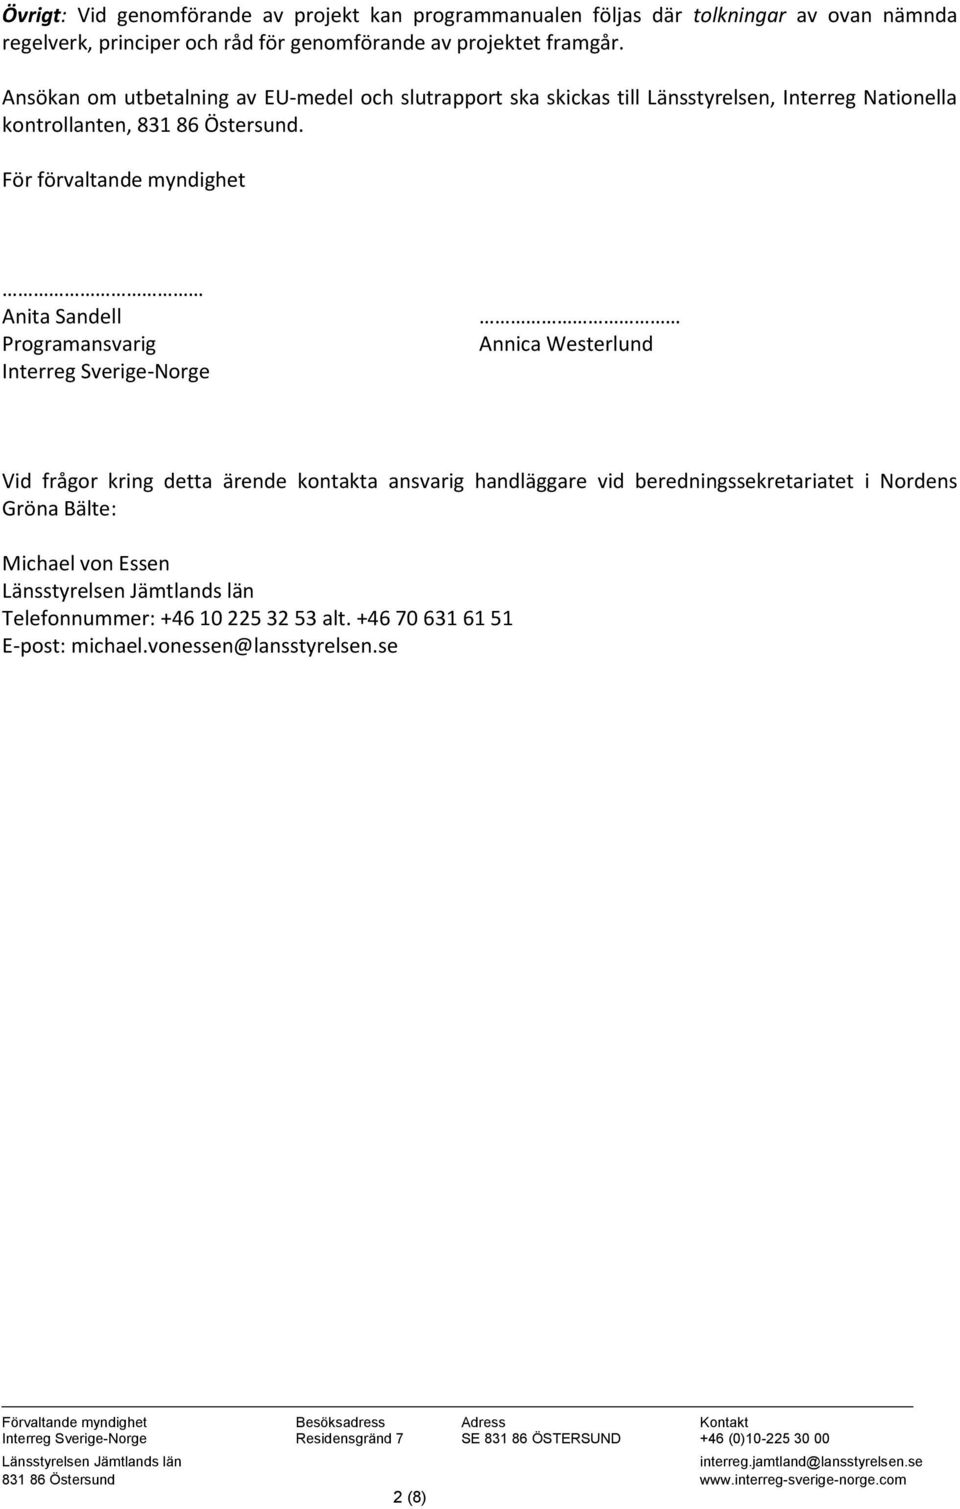 För förvaltande myndighet Anita Sandell Programansvarig Interreg Sverige-Norge Annica Westerlund Vid frågor kring detta ärende kontakta ansvarig handläggare vid beredningssekretariatet i Nordens